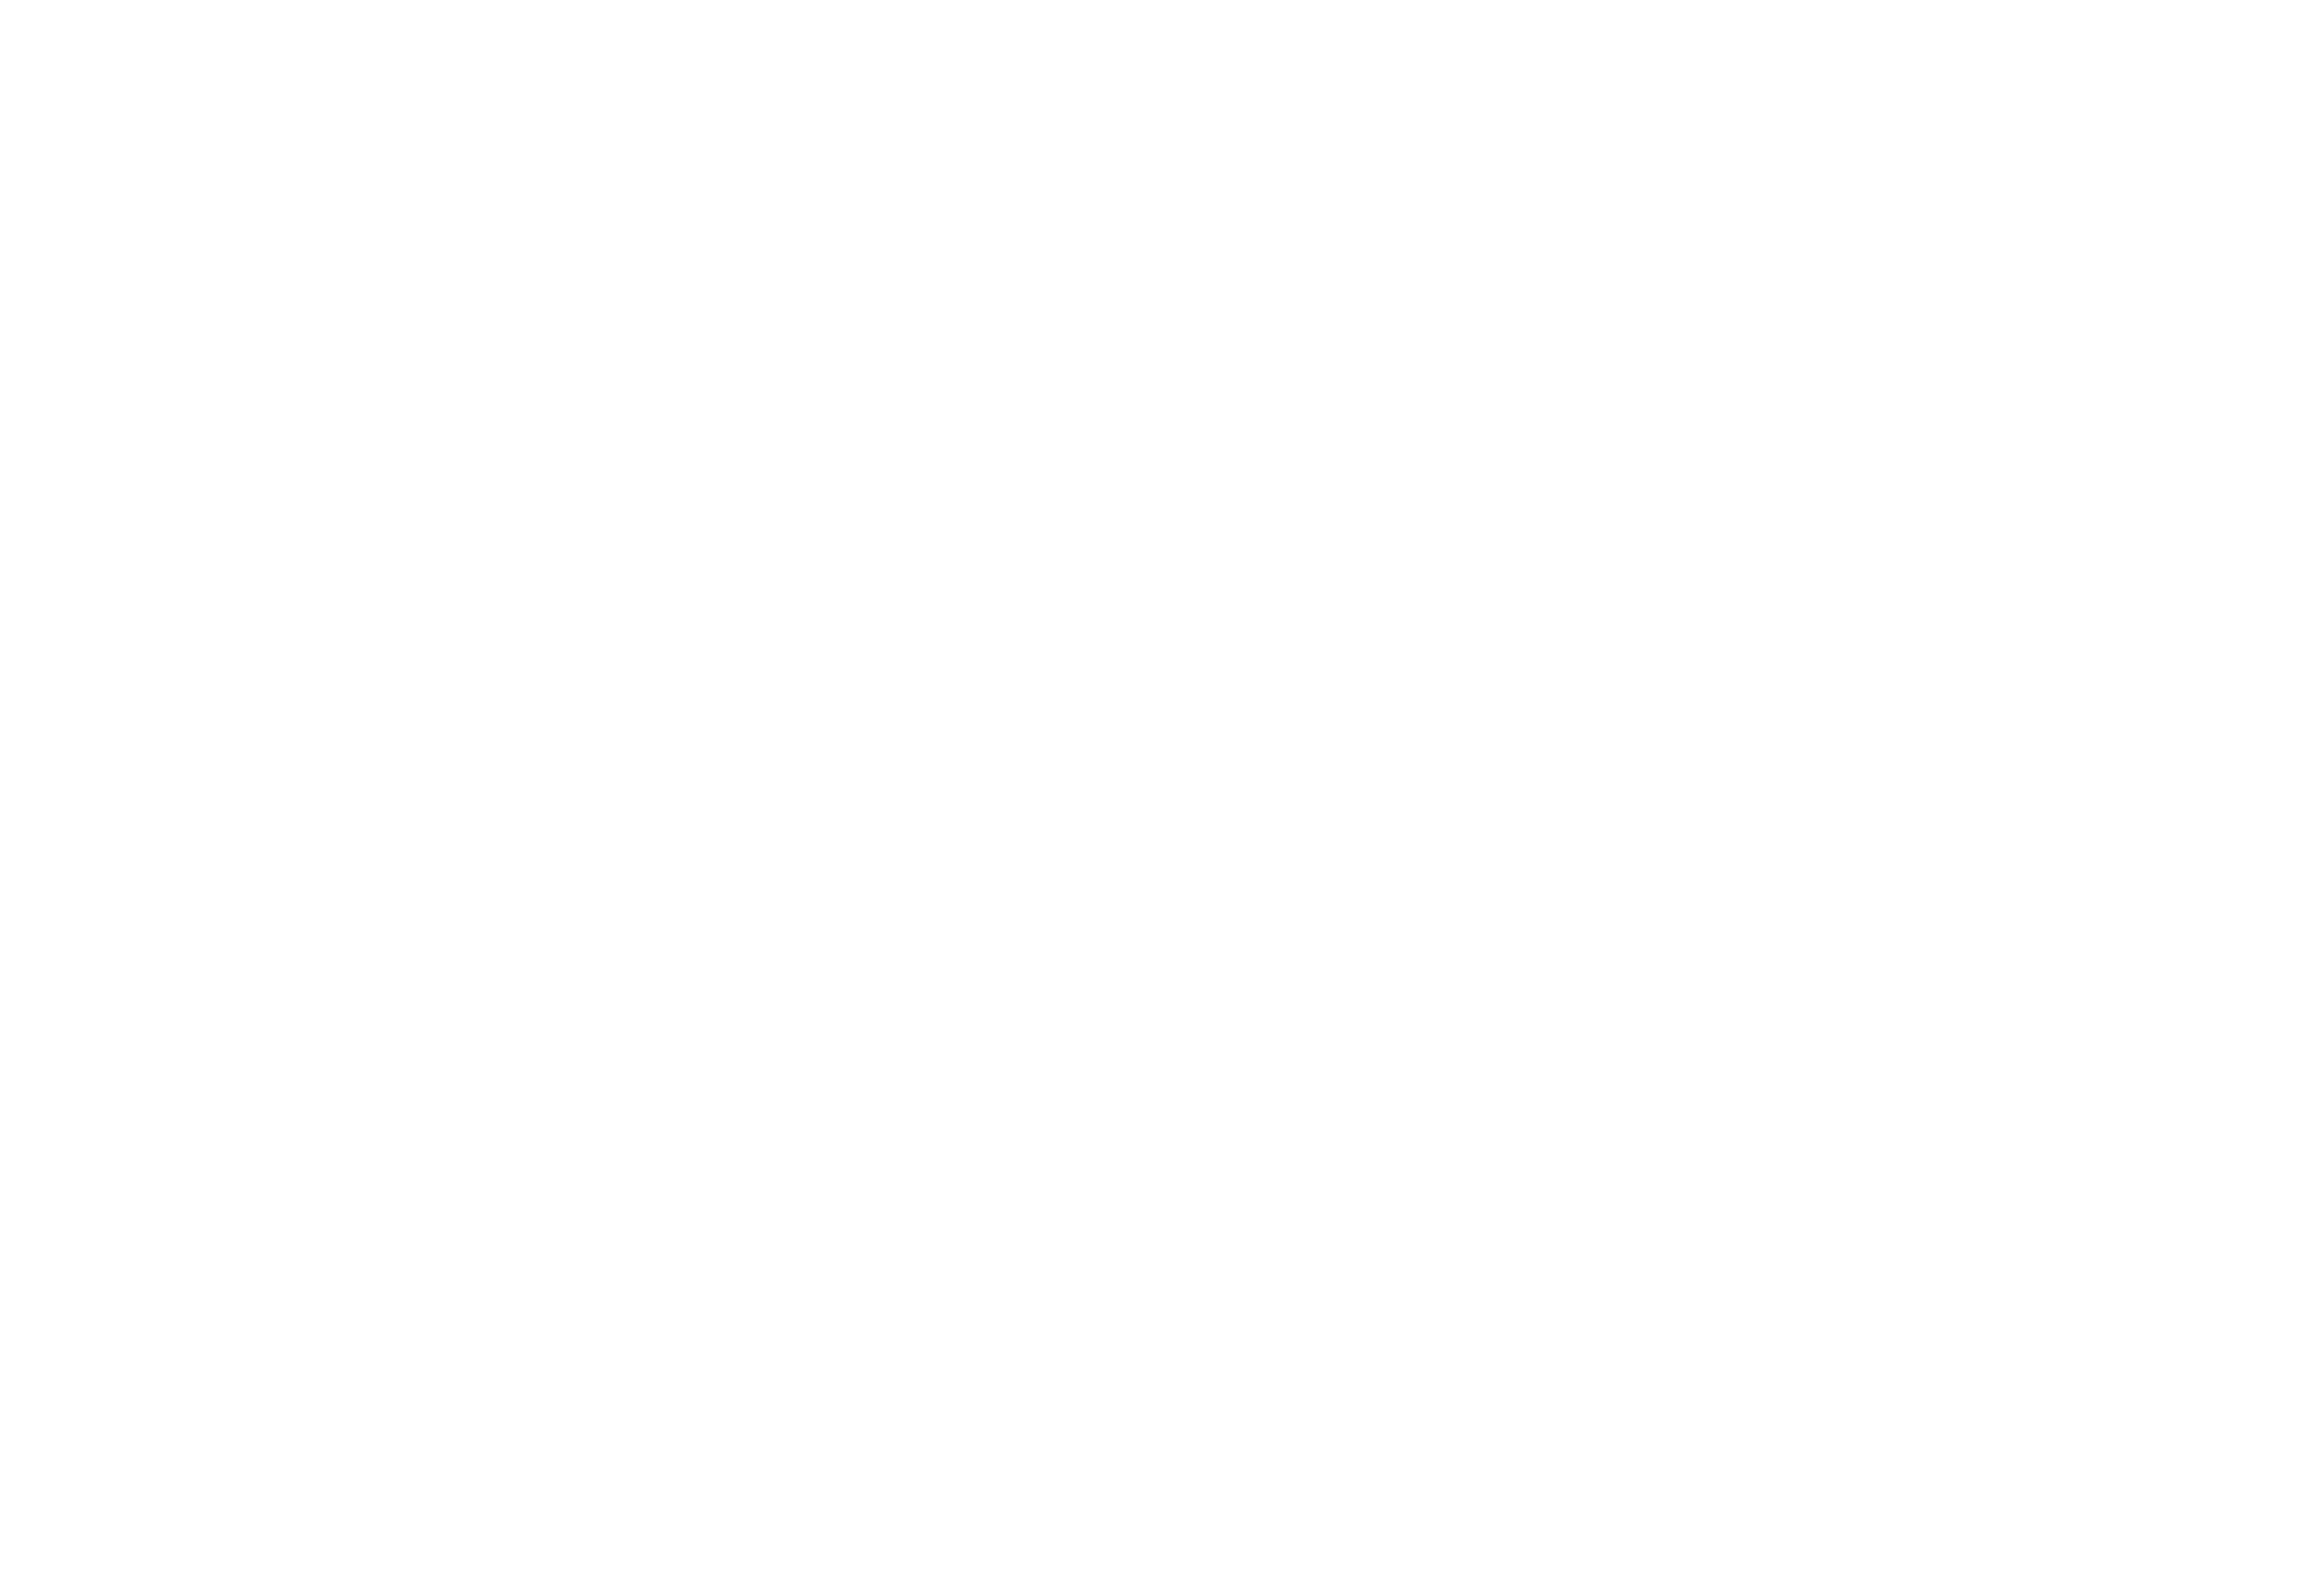 Cadillac Jack's Gaming Resort